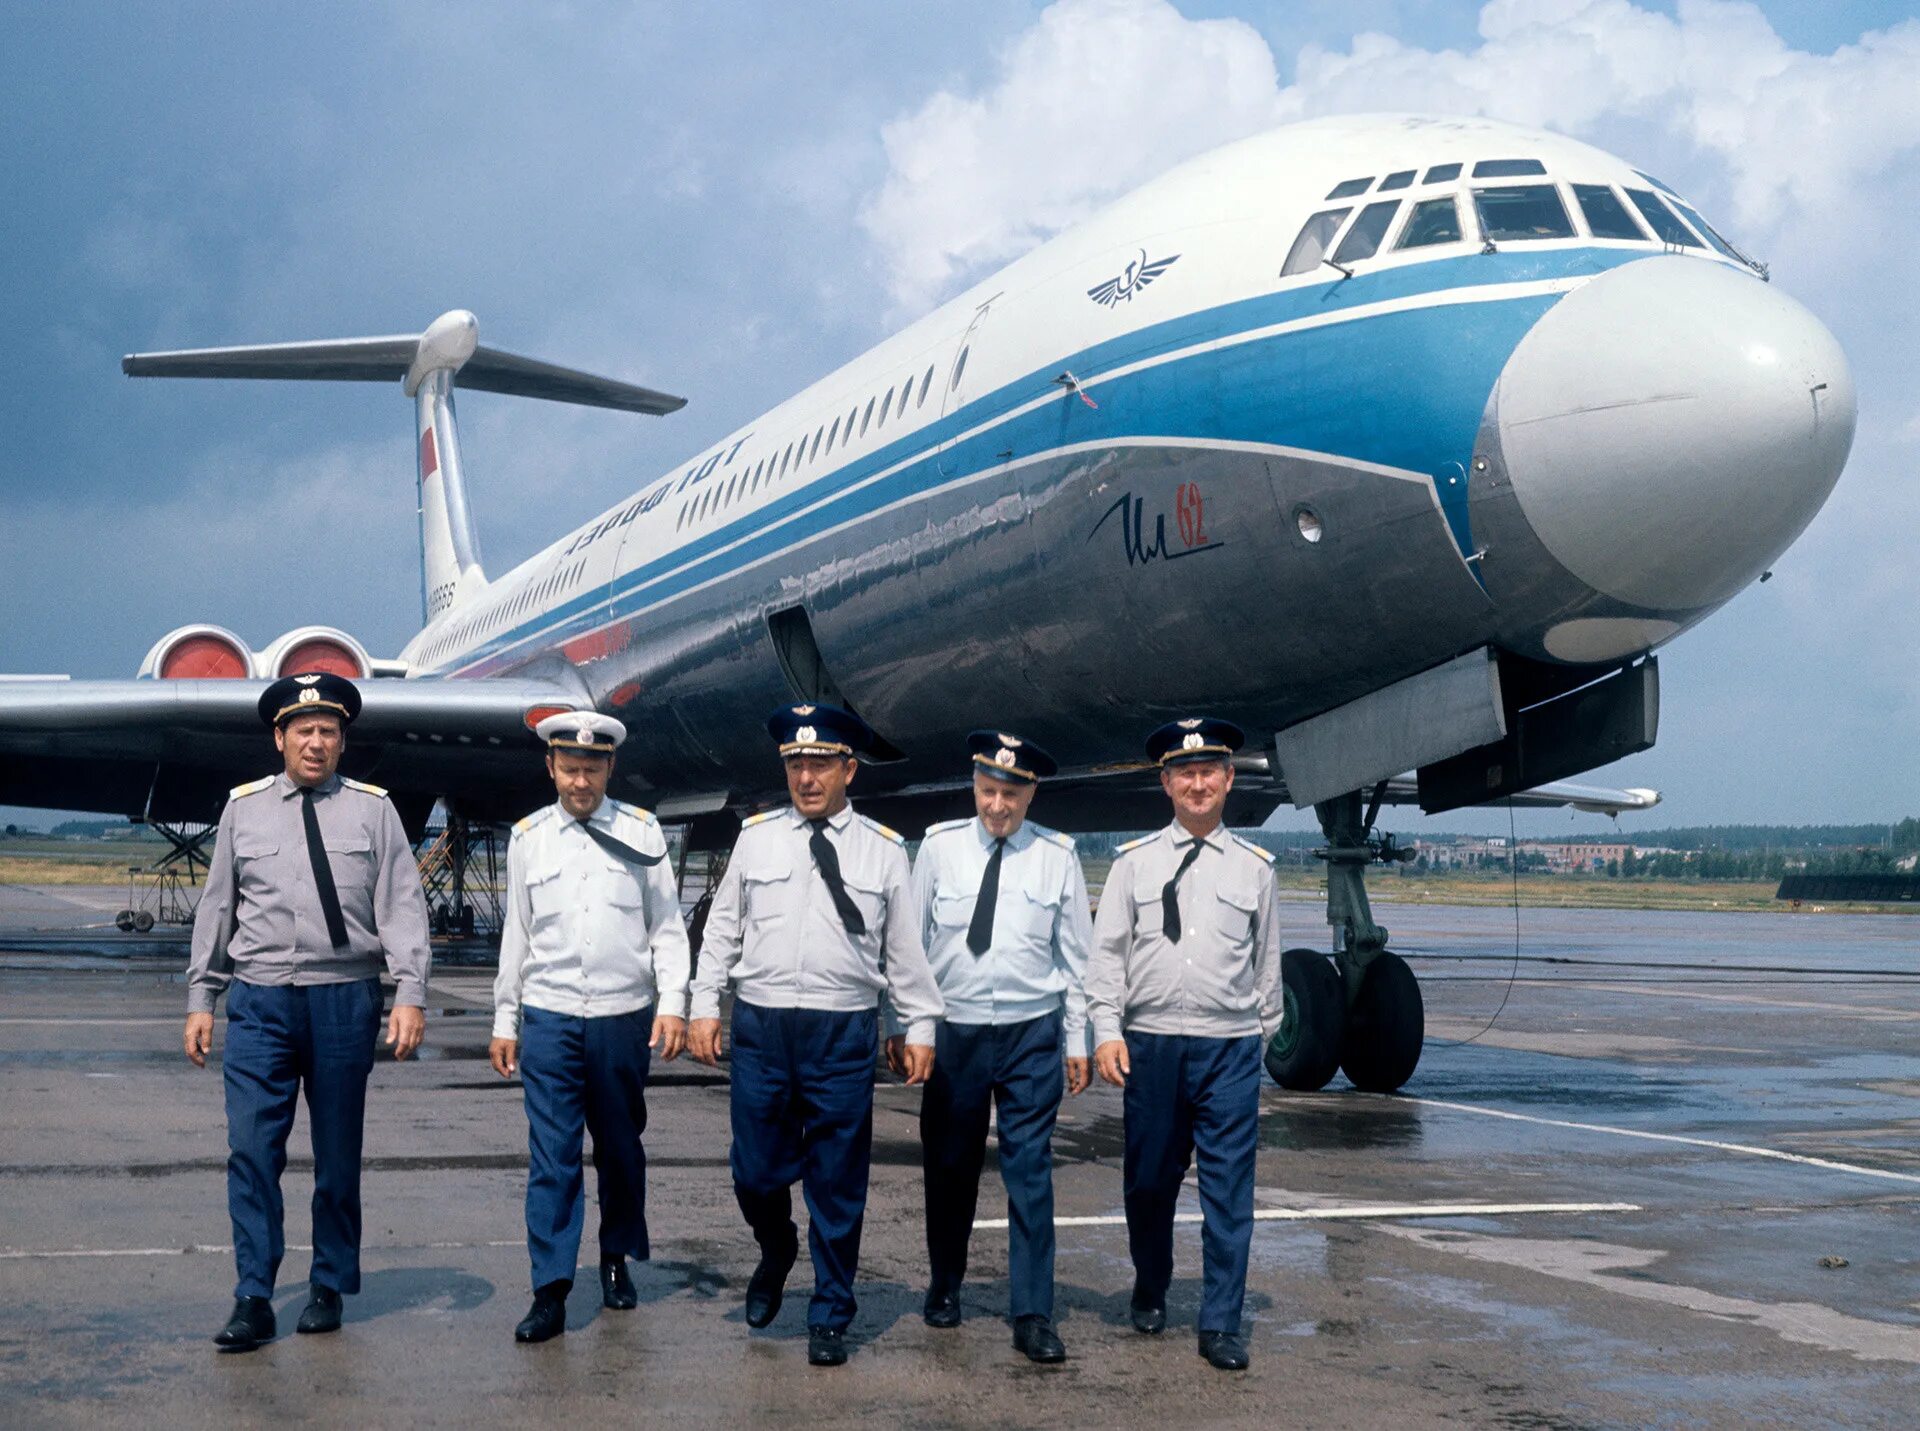 Гражданской авиации отзывы. Ил-62 пассажирский самолёт. Экипаж ил-62. Пилоты ил62. Ил-62 в аэропорту.